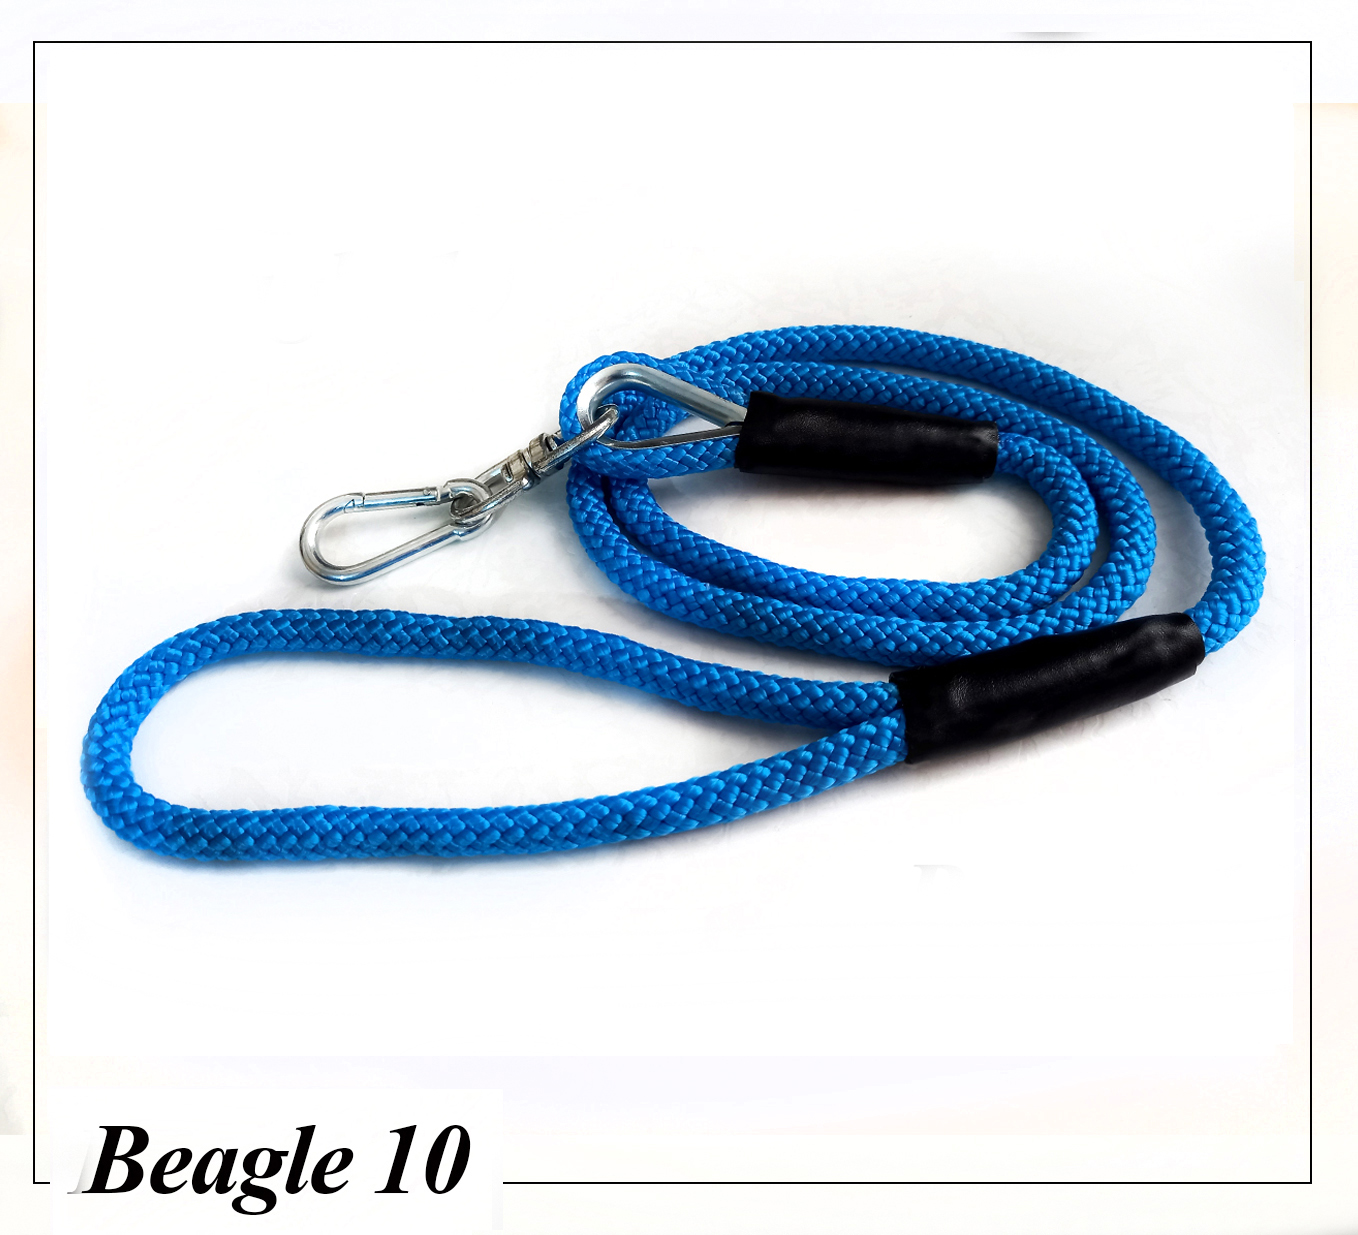 بیگل 10 تهیه شده از طناب پاراکورد با دوام و انعطاف پذیری بالا مناسب سگهای سبک وزن.